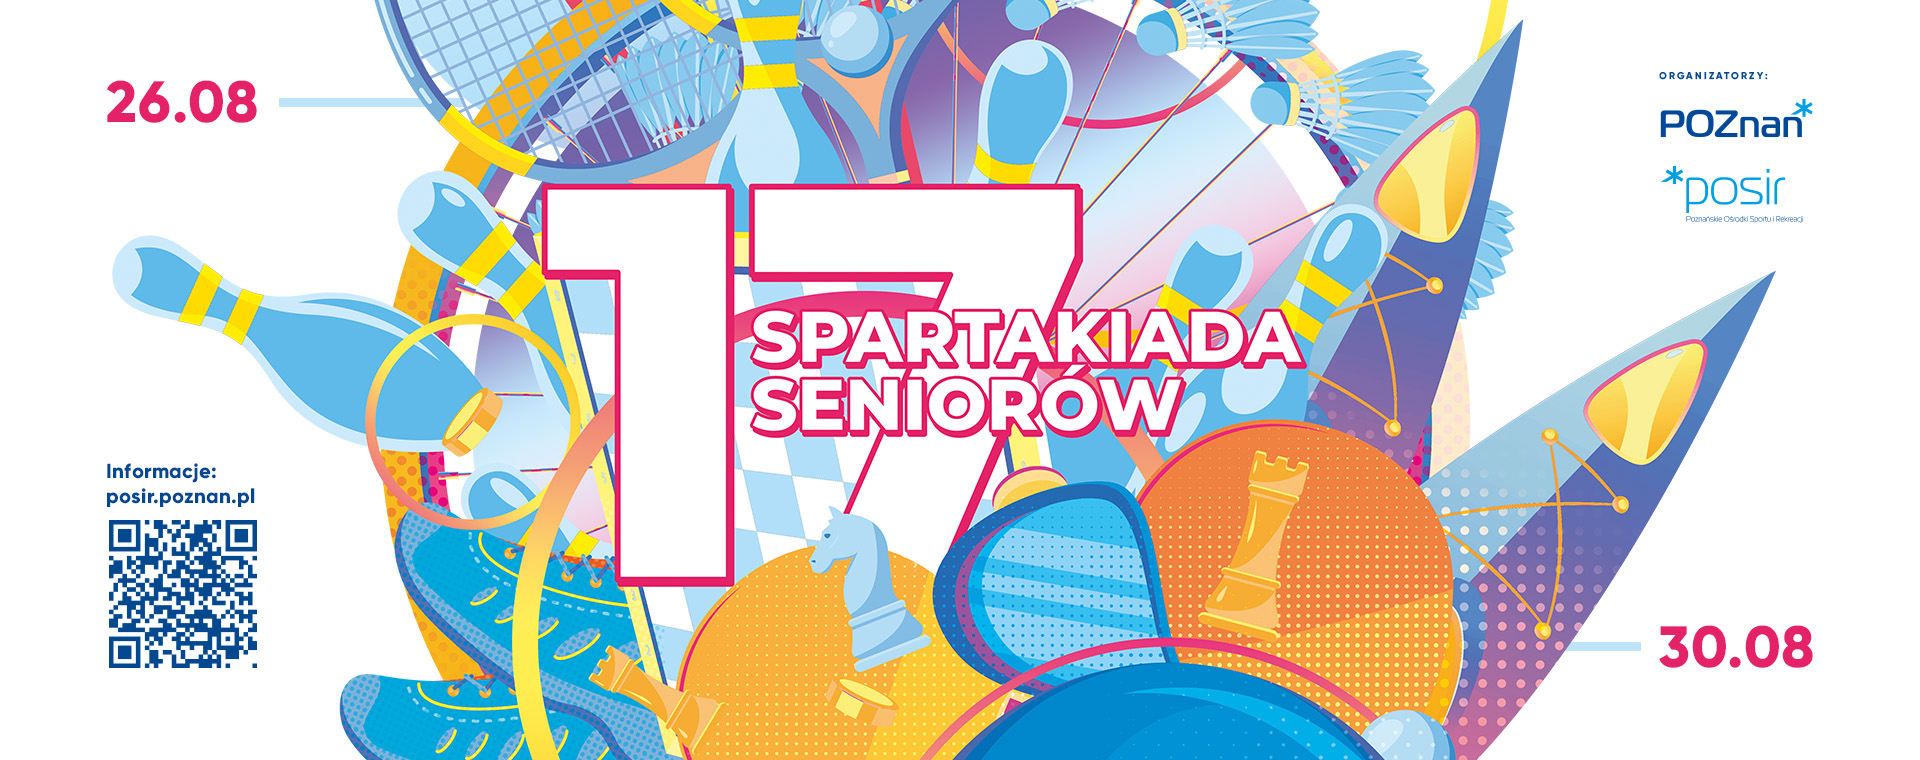 Logotyp XVII edycji Spartakiady Seniorów i data wydarzenia 26.08-30.08